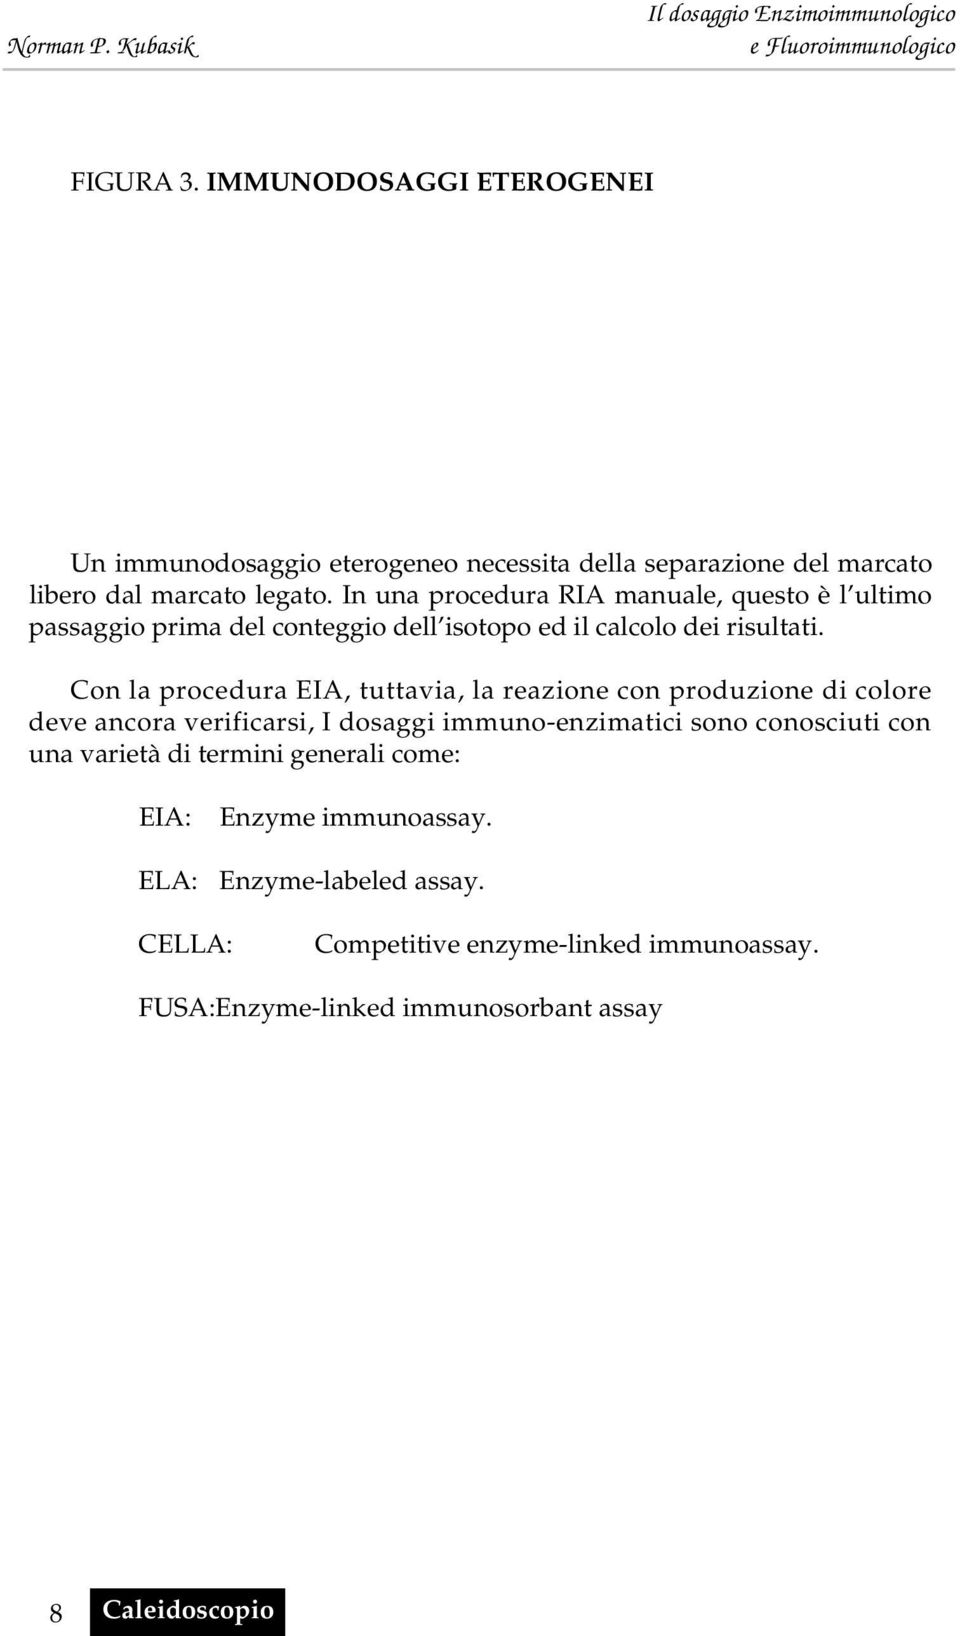 Con la procedura EIA, tuttavia, la reazione con produzione di colore deve ancora verificarsi, I dosaggi immuno-enzimatici sono conosciuti con una